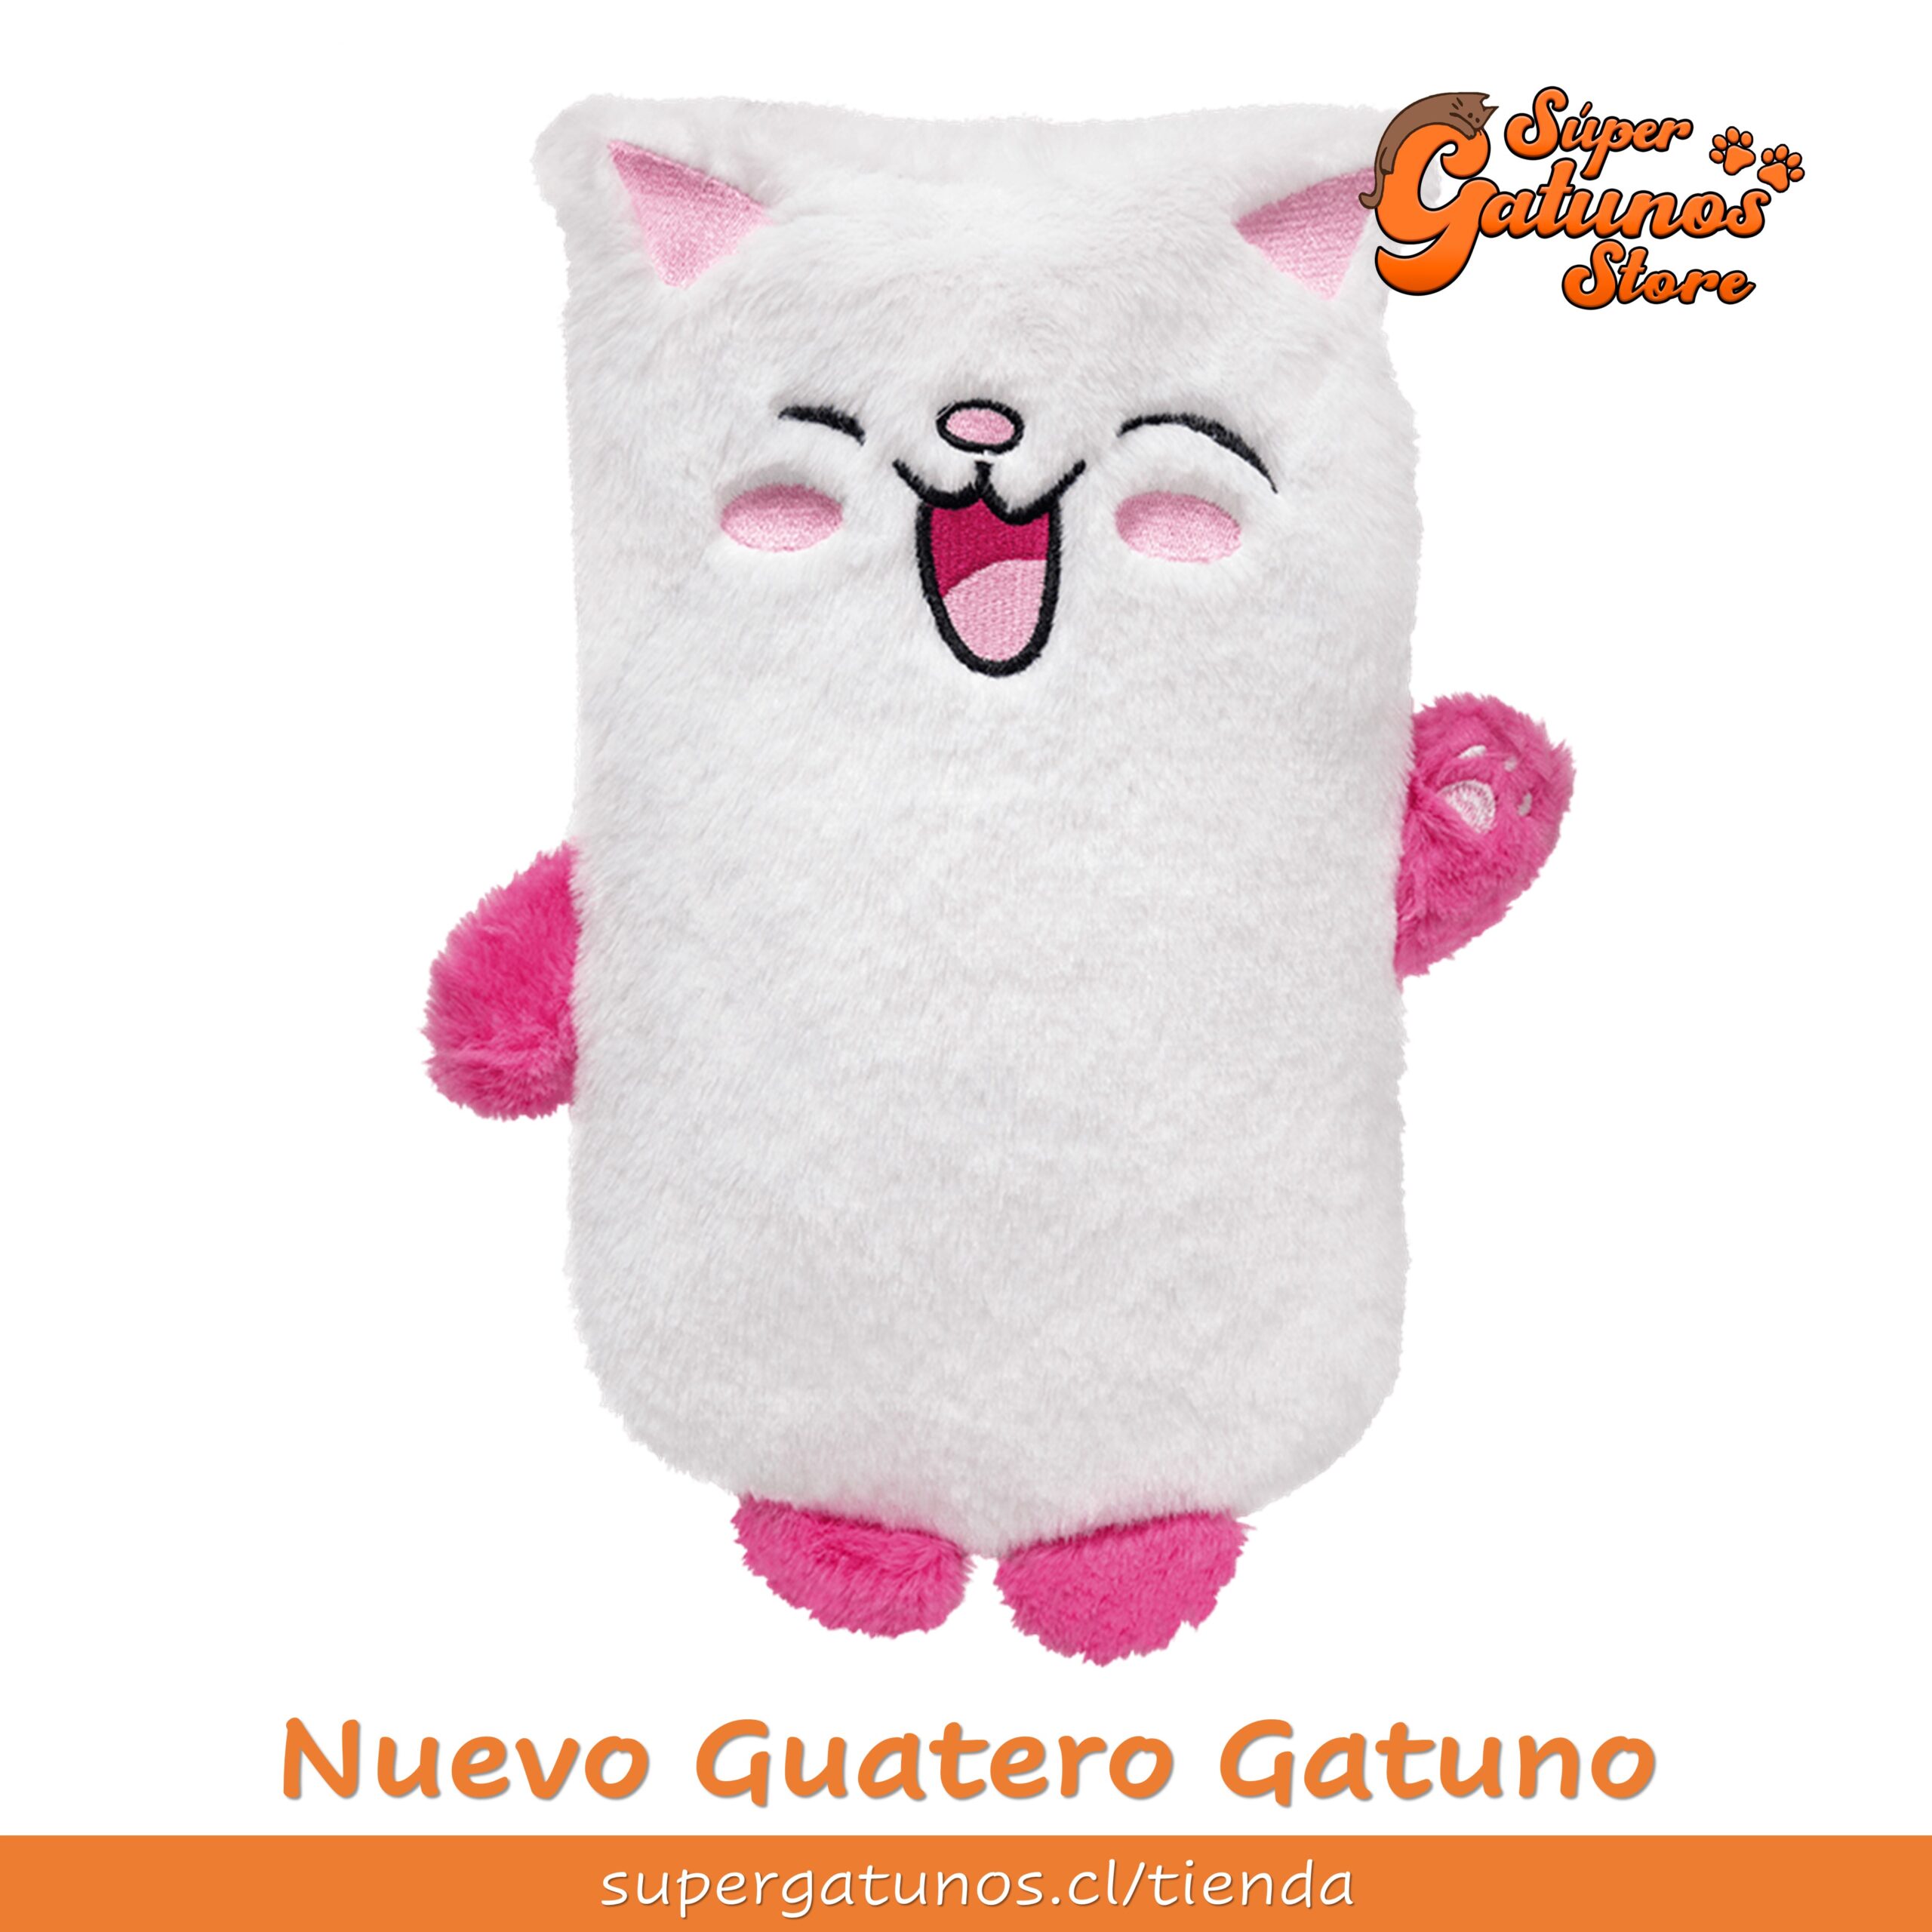 Guatero Gatuno